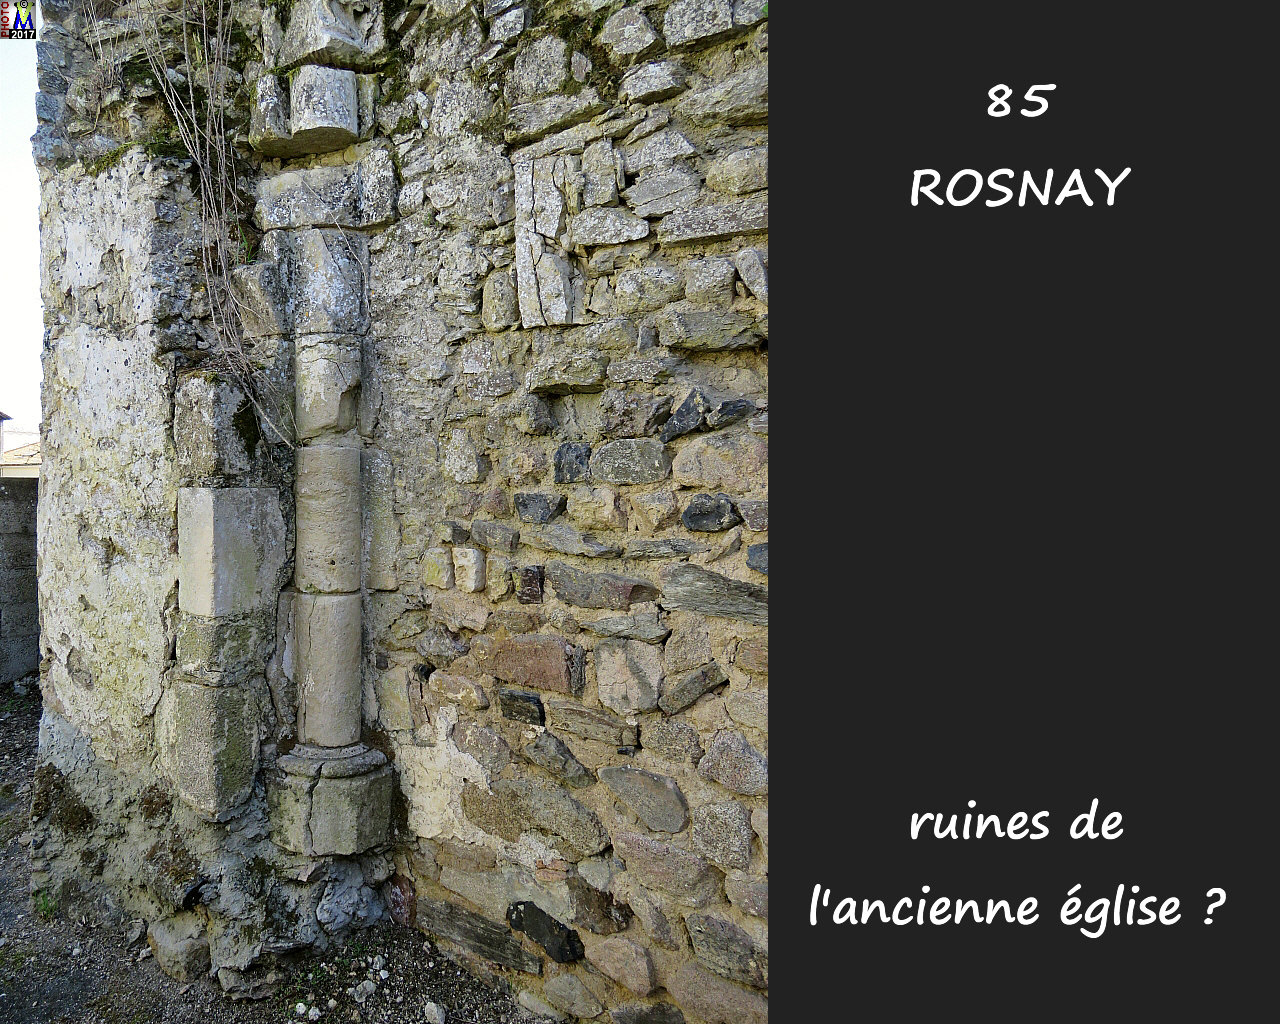 85ROSNAY_ruines_1000.jpg